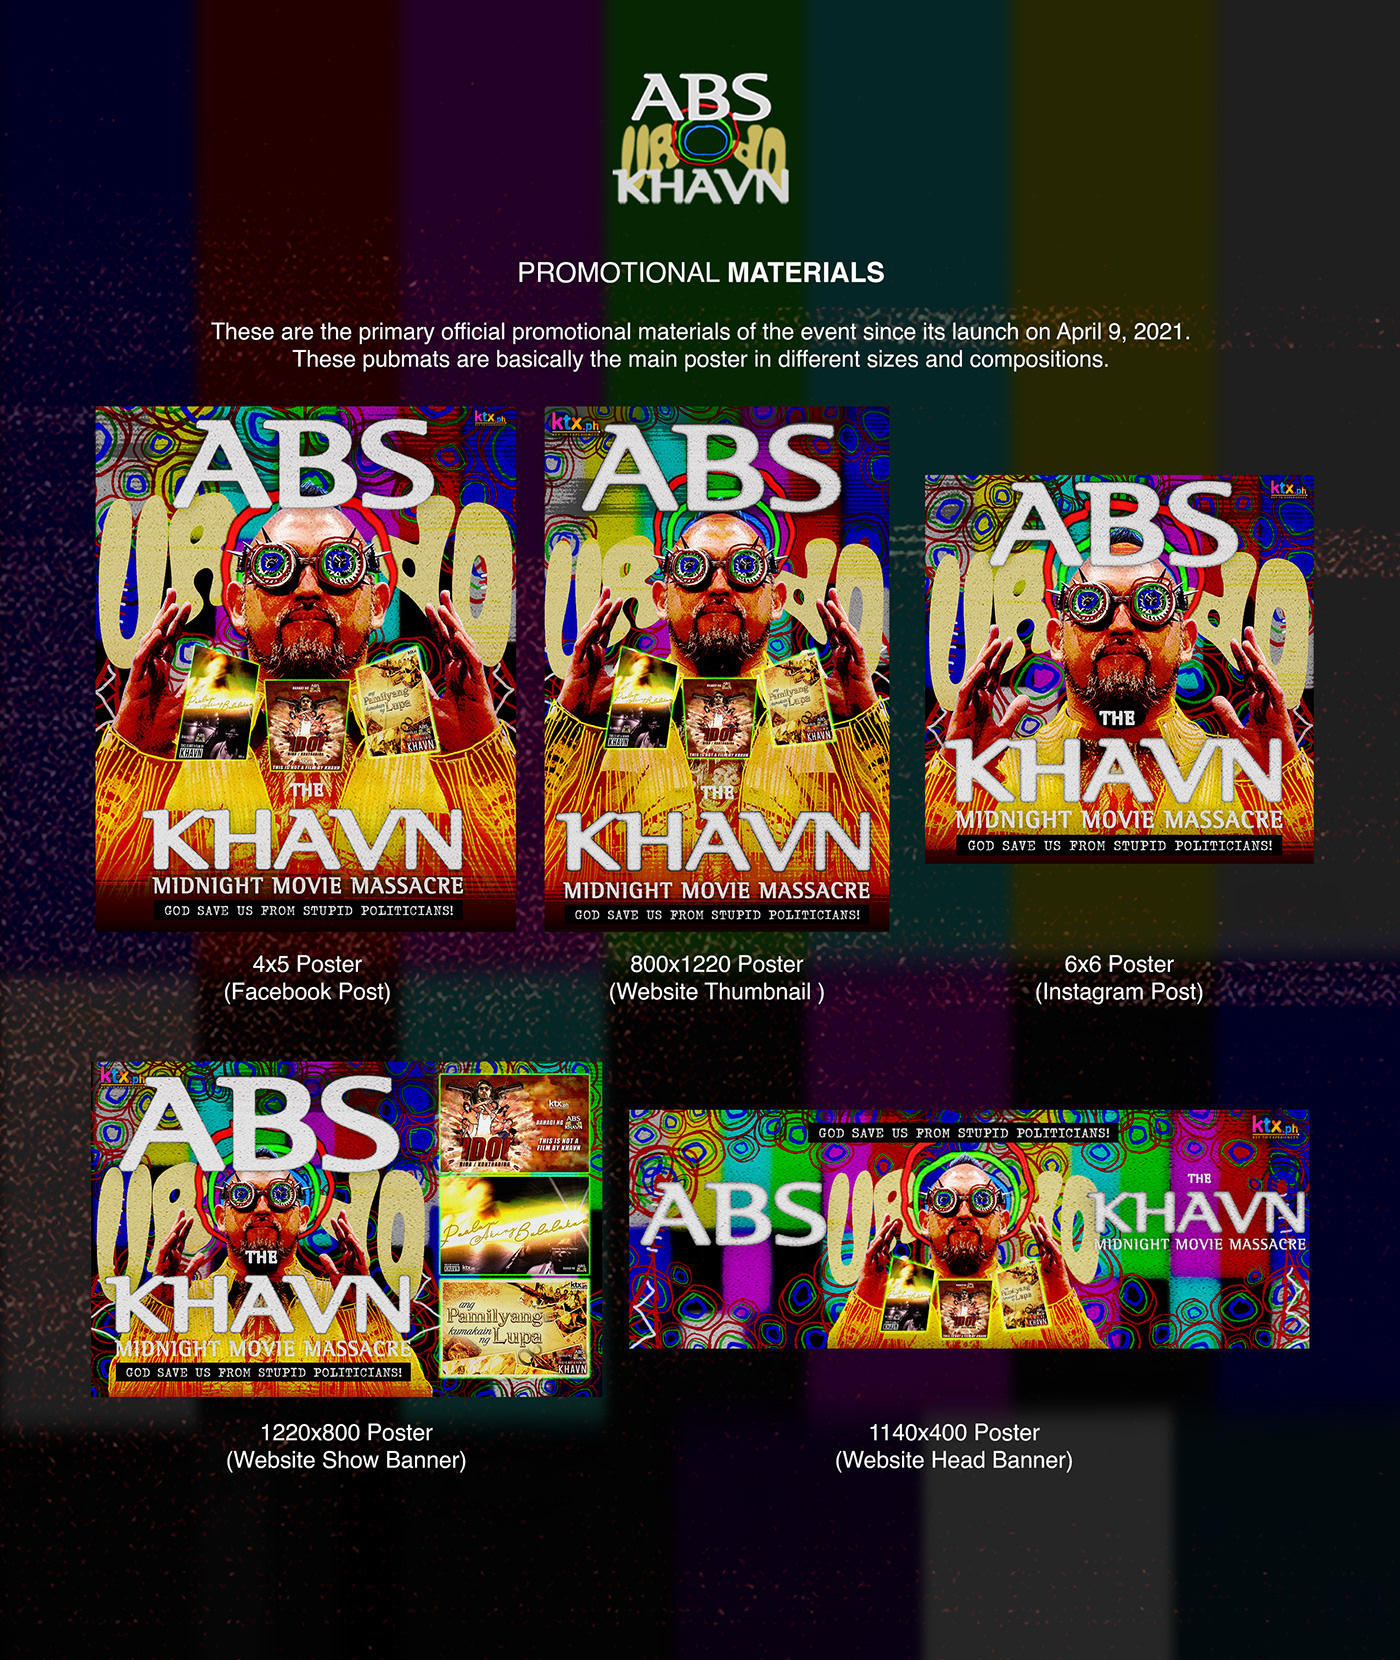 ABSCBN Adam Santos branding  Film   ktx movie philippines Pinoy Poster Design